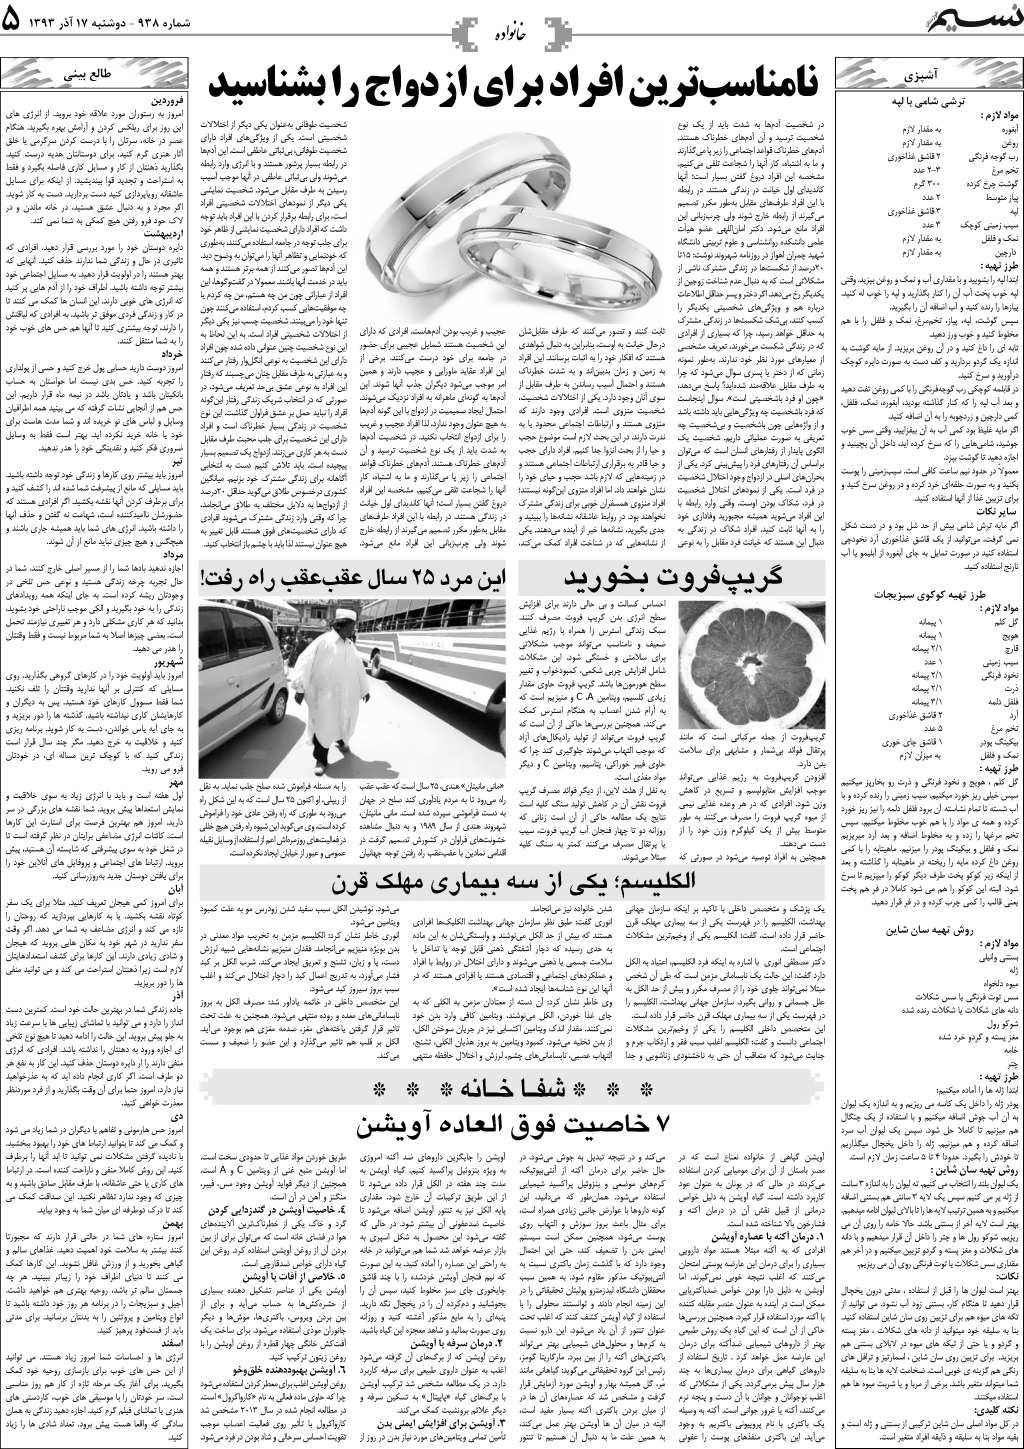 صفحه خانواده روزنامه نسیم شماره 938